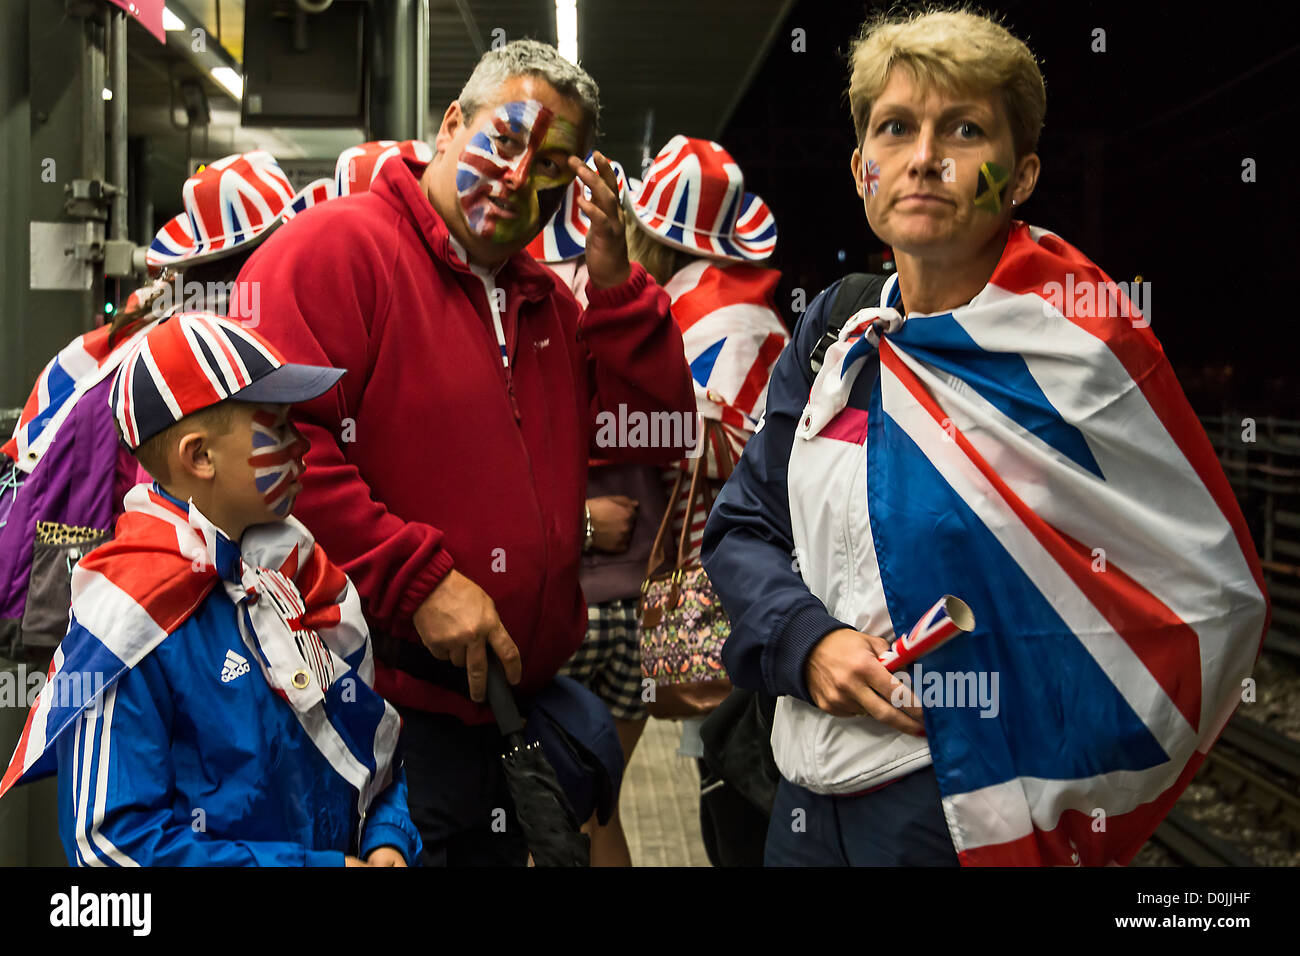 Eine Gruppe von britischen Fans nach Hause nach einem Tag bei einer Sportveranstaltung. Stockfoto